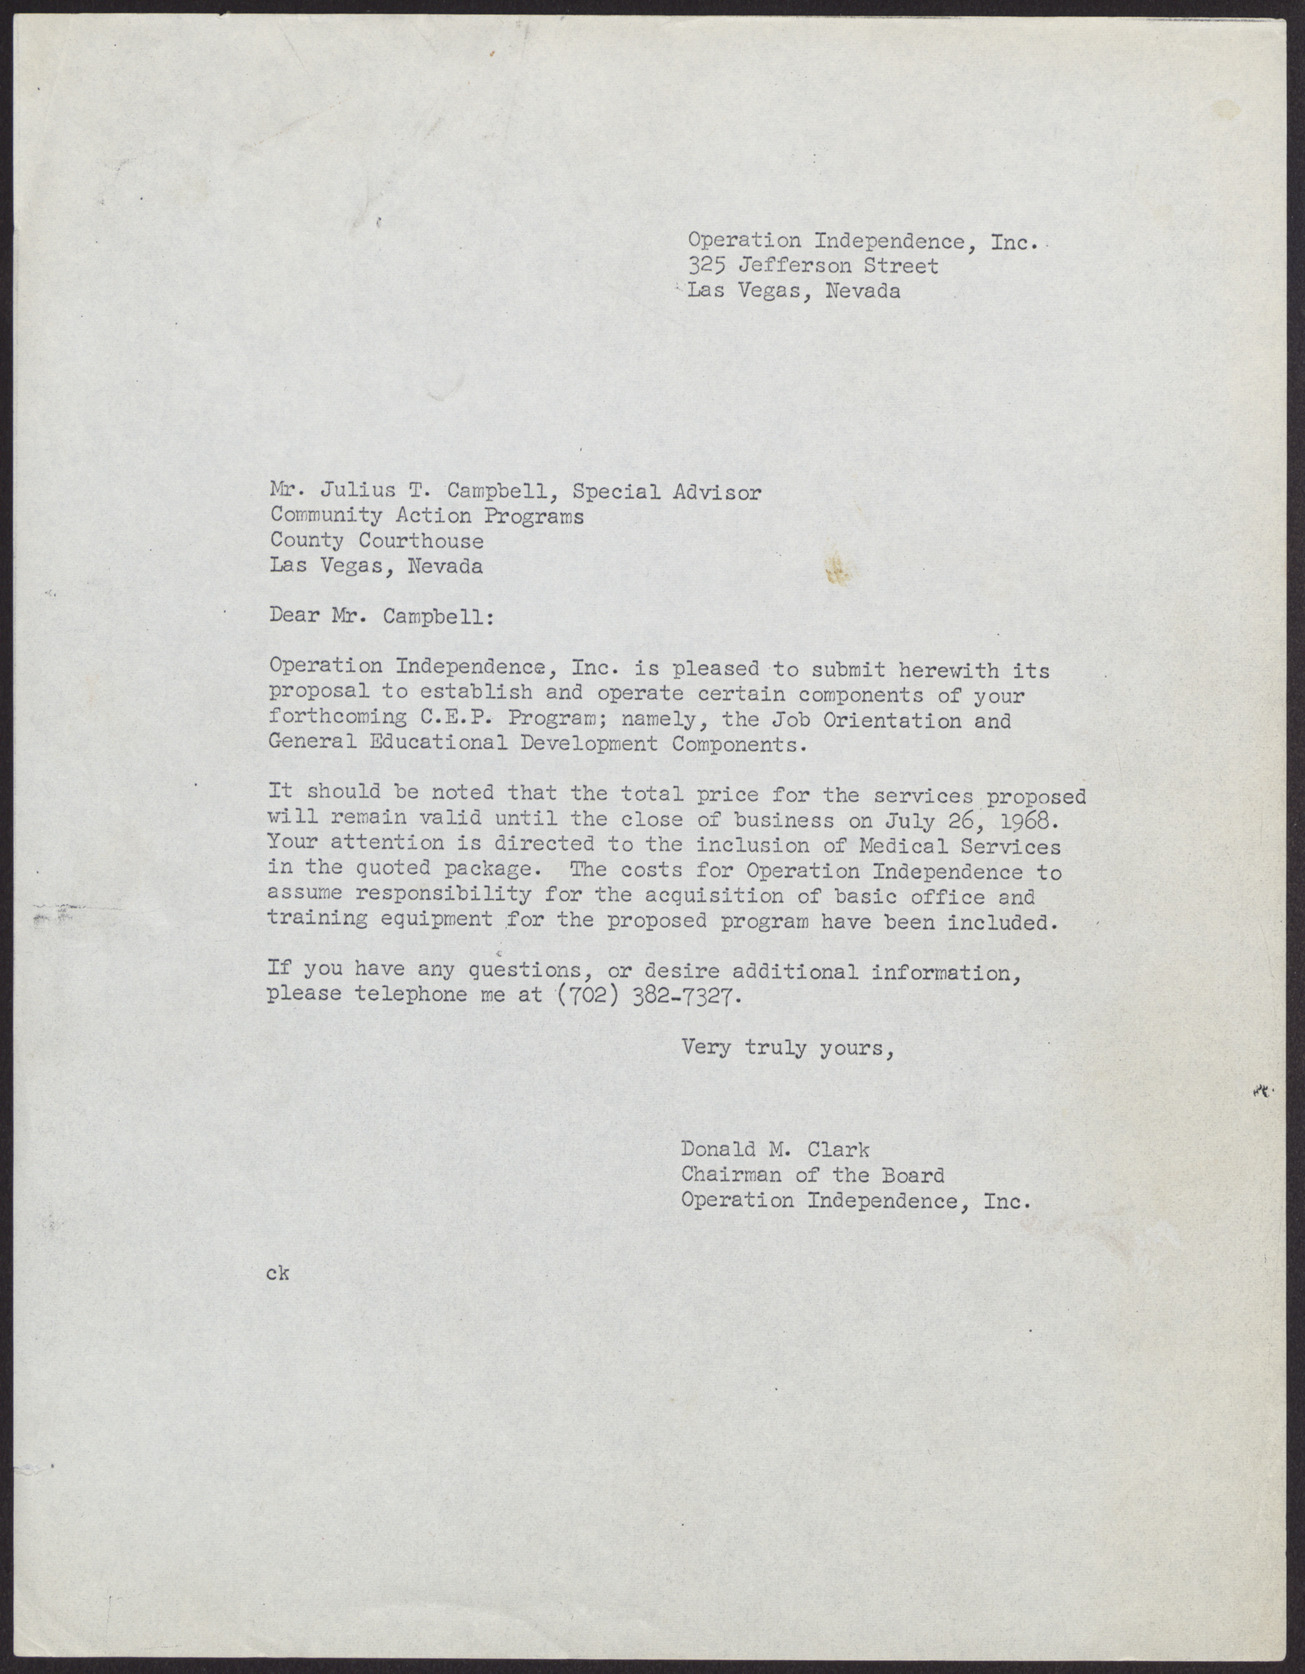 Letter to Rev. Donald Clark from Heinz Rettig, September 6, 1961